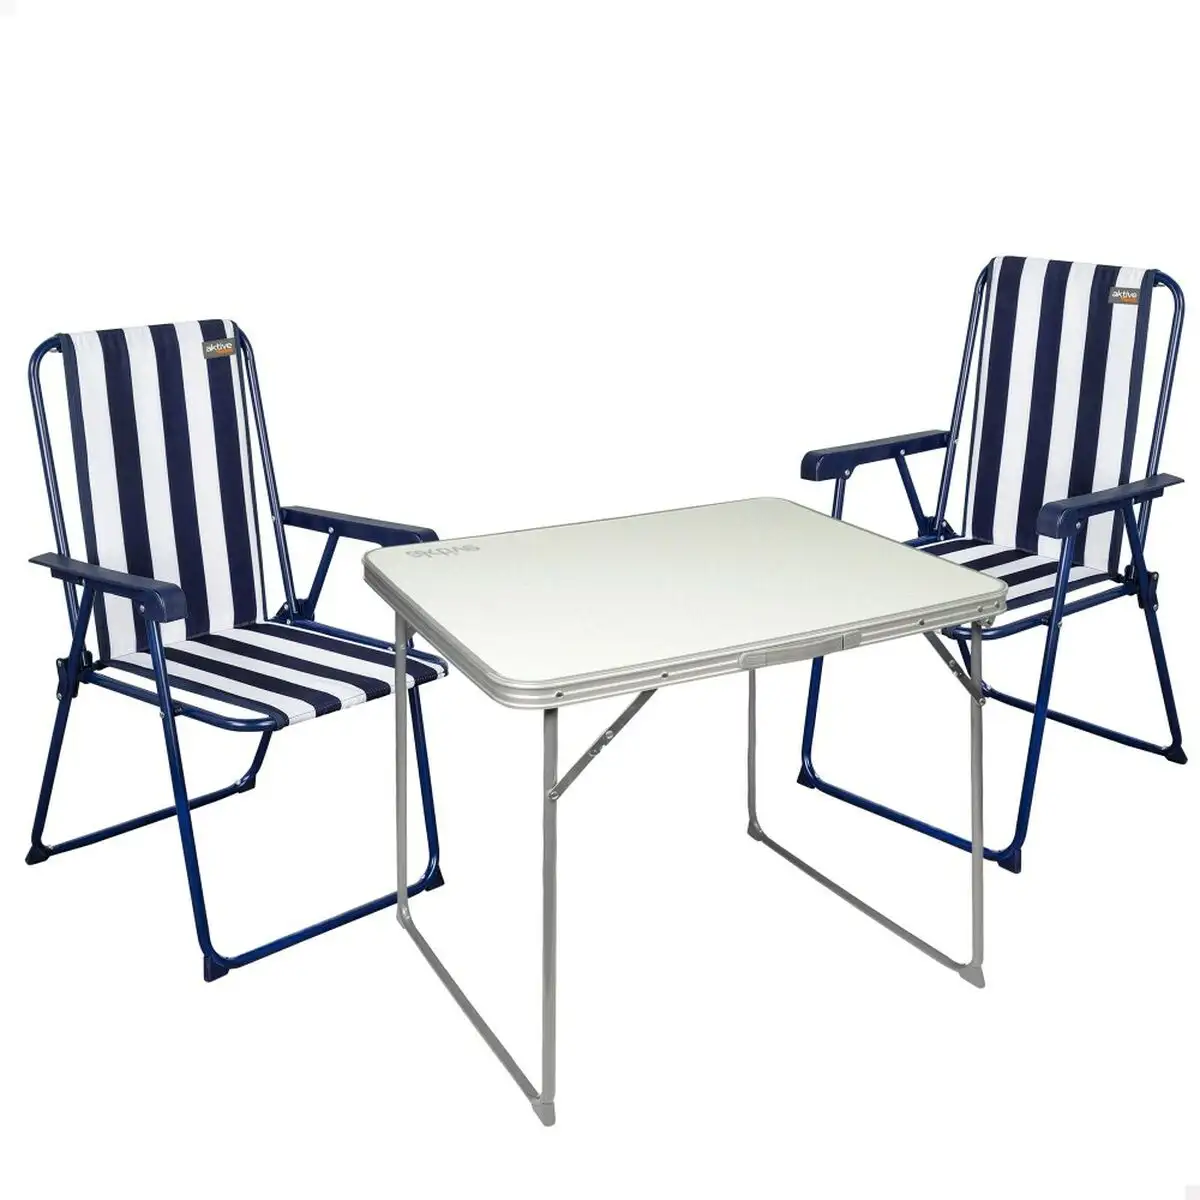 Ensemble table 2 chaises aktive pliable de camping_9263. DIAYTAR SENEGAL - Là où le Shopping Devient une Expérience. Naviguez à travers notre catalogue diversifié et découvrez des produits qui ajoutent de la couleur et de la passion à votre vie.